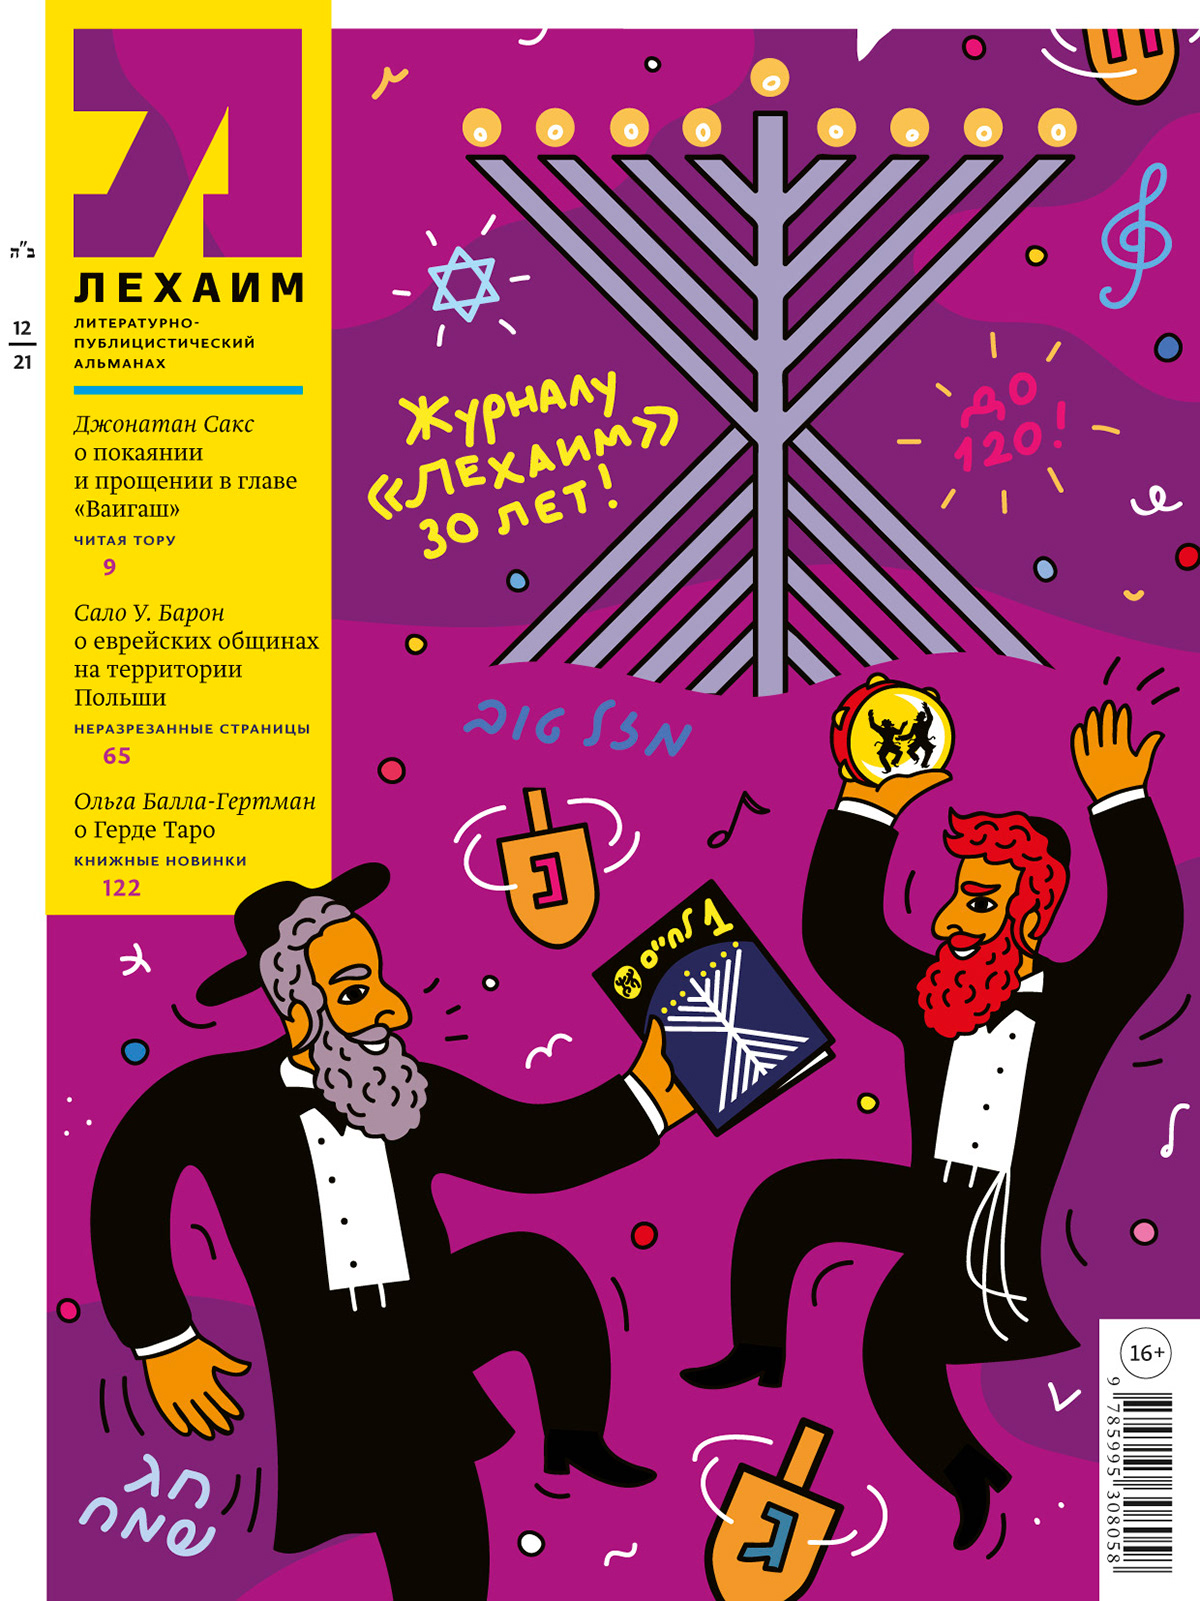 30th anniversary of Lechaim magazine